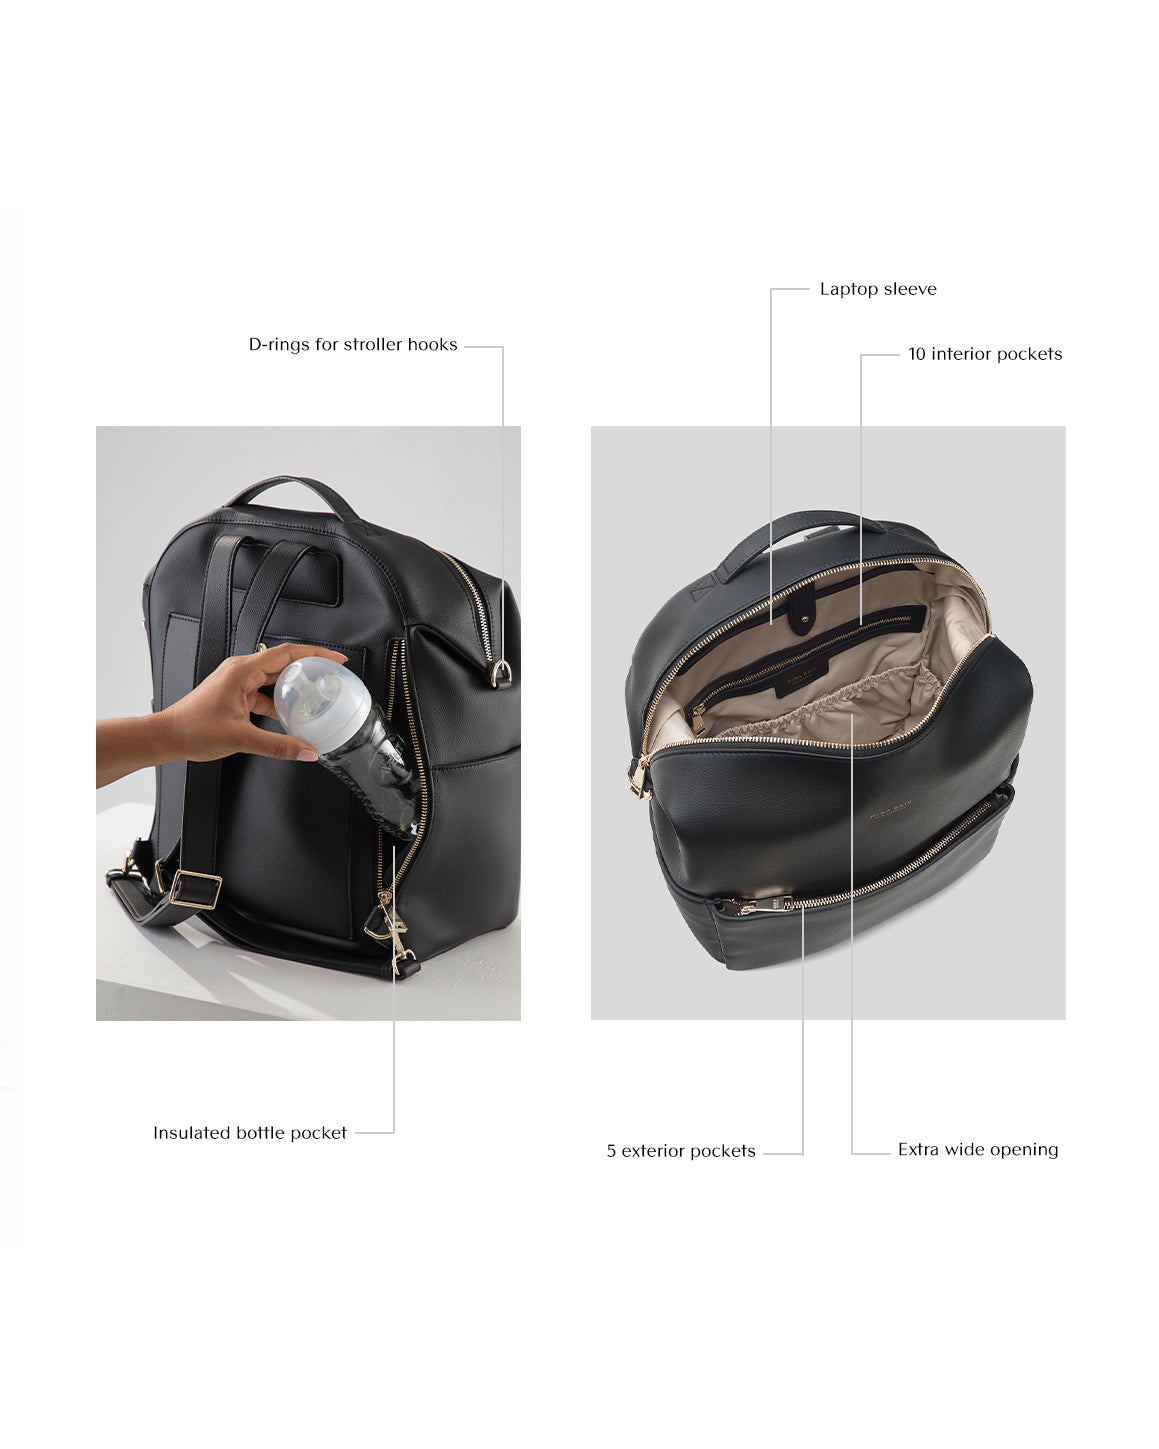 Stevie Mini Backpack (Leather) – MINA BAIE